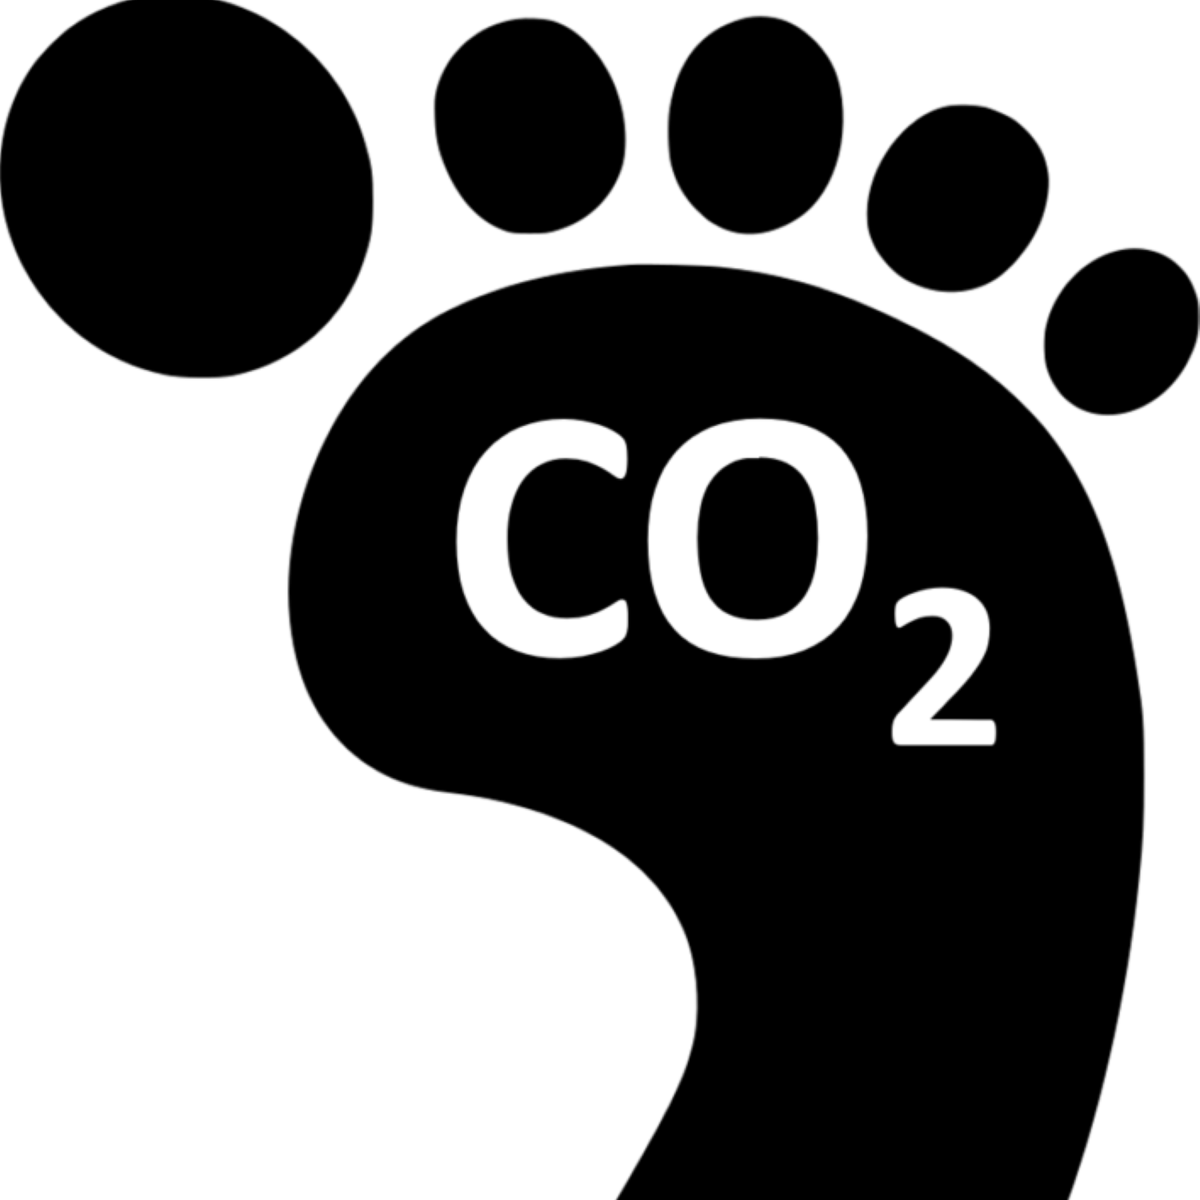 Углеродный след. Углеродный след человека. Углеродный след иконка. Углеродный след лого.